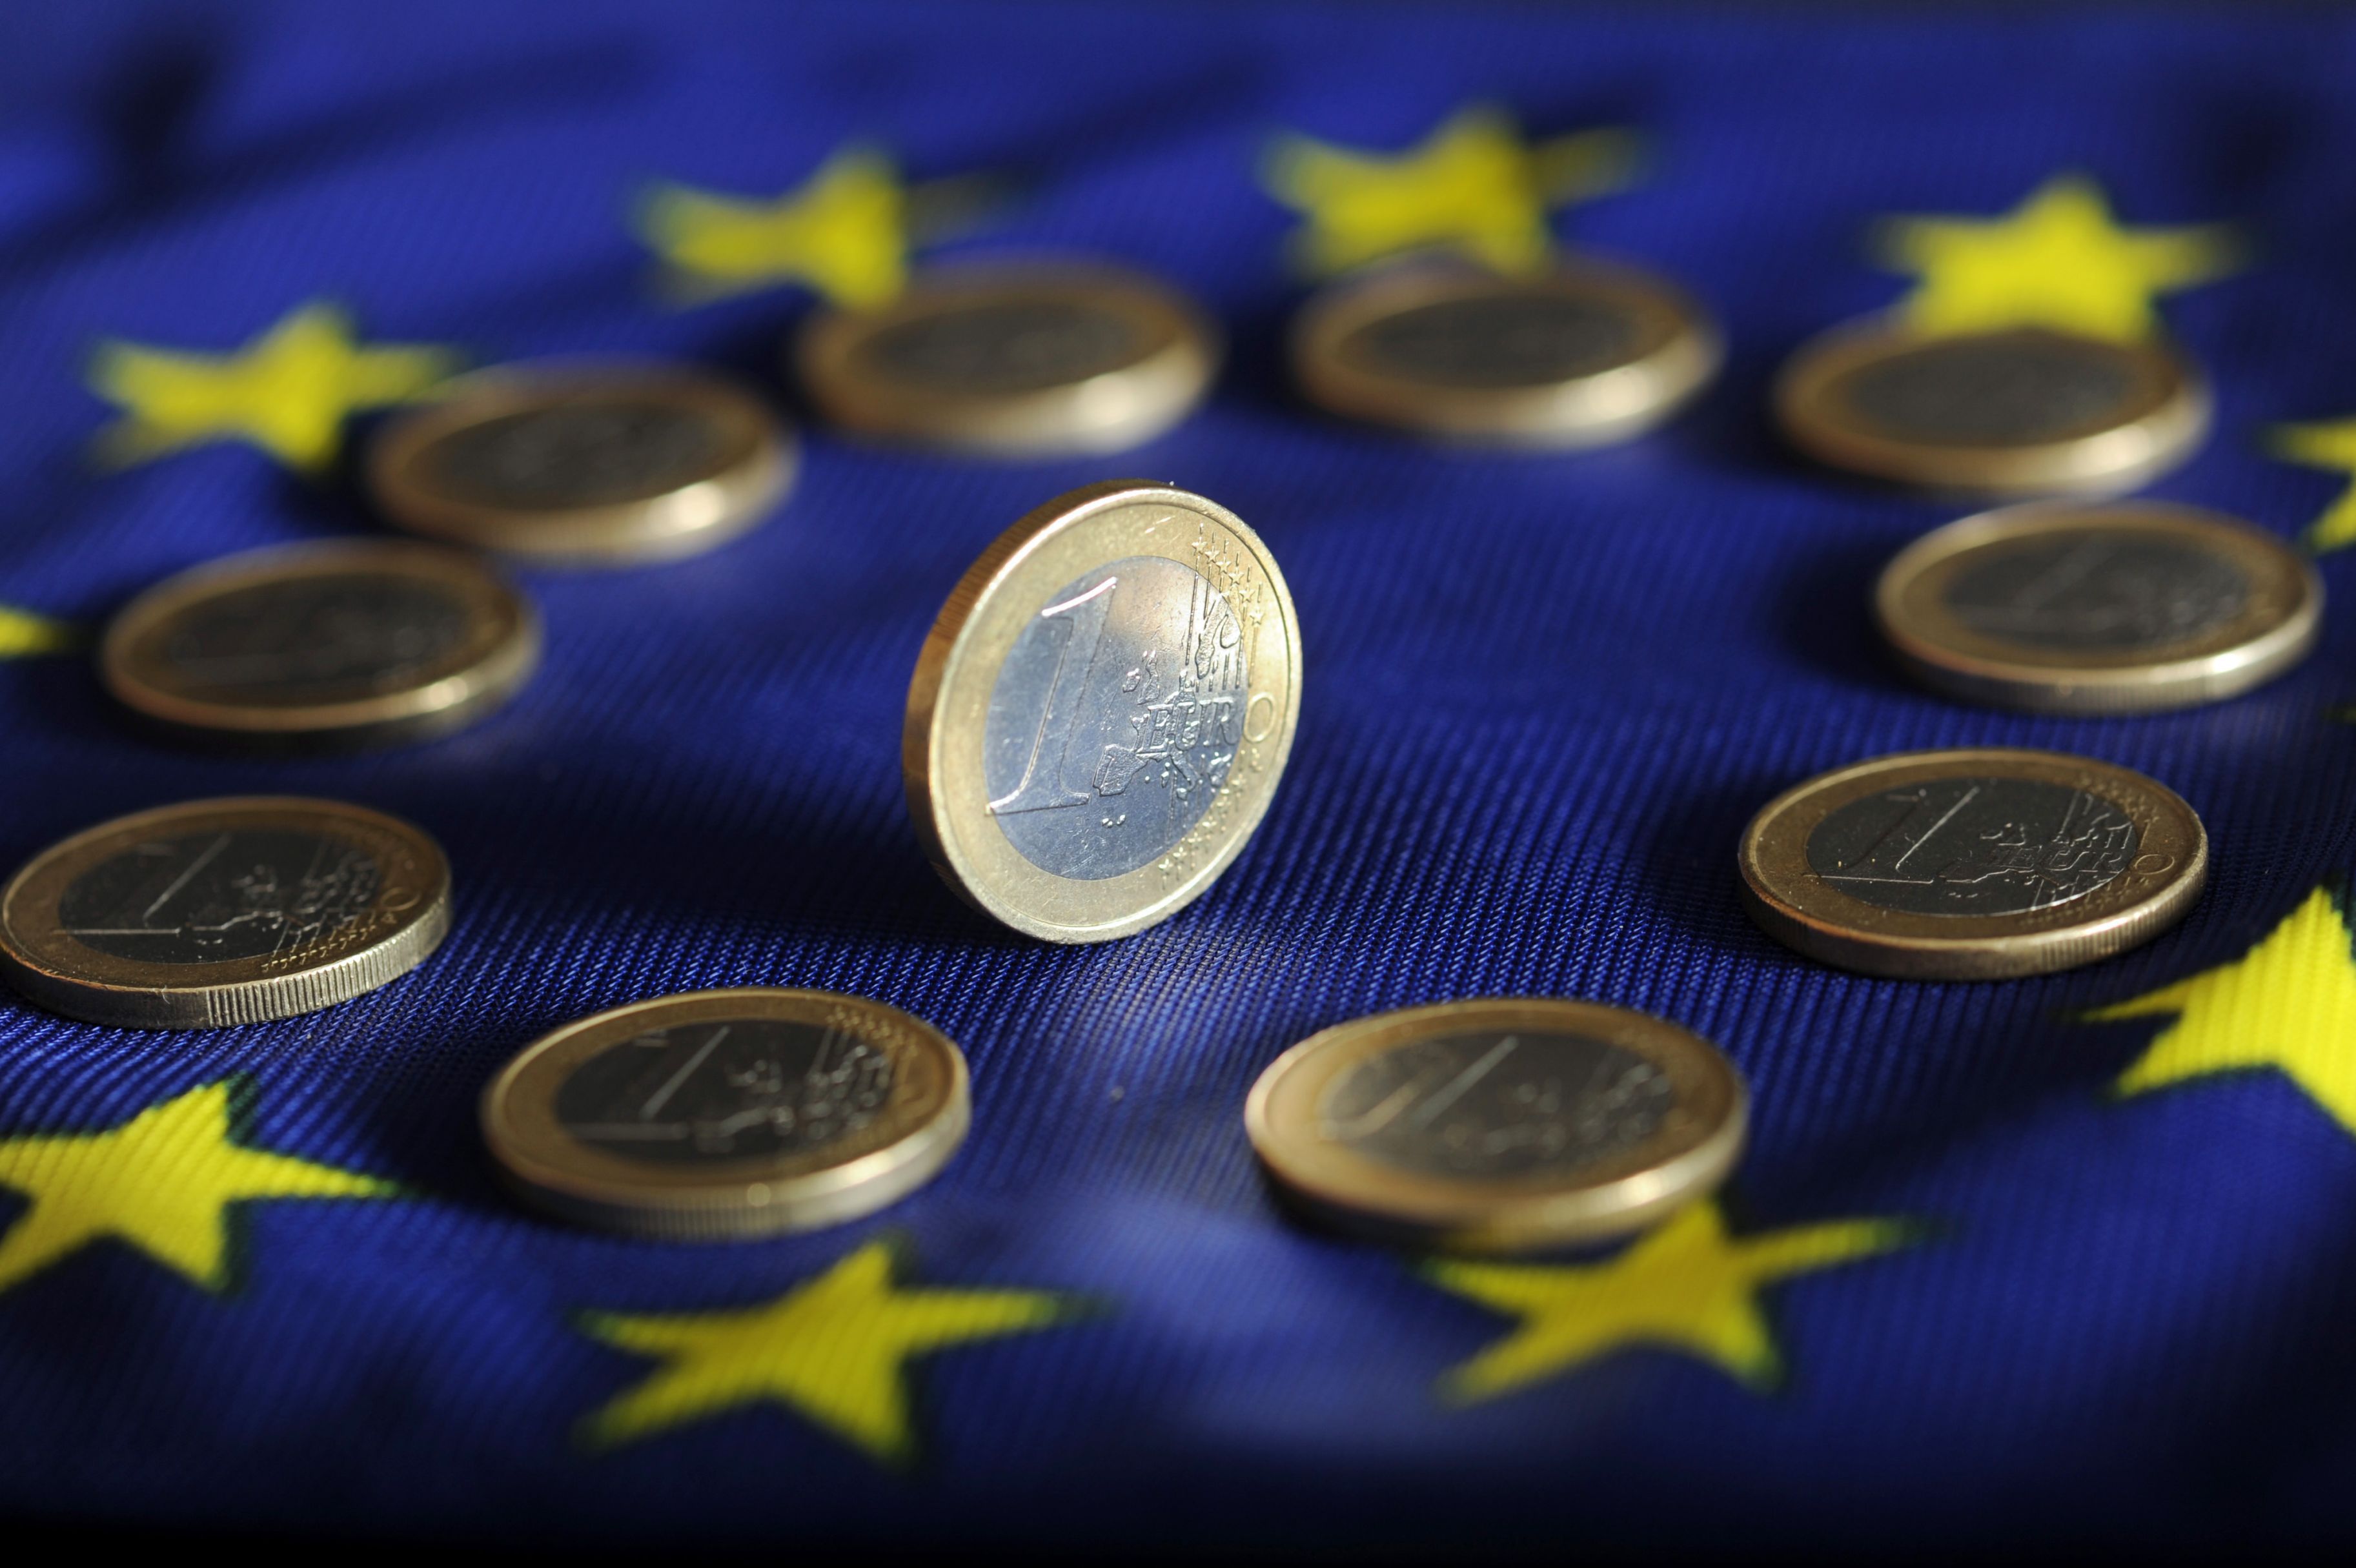 Polonia ar putea lua în calcul trecerea la euro în 8-10 ani